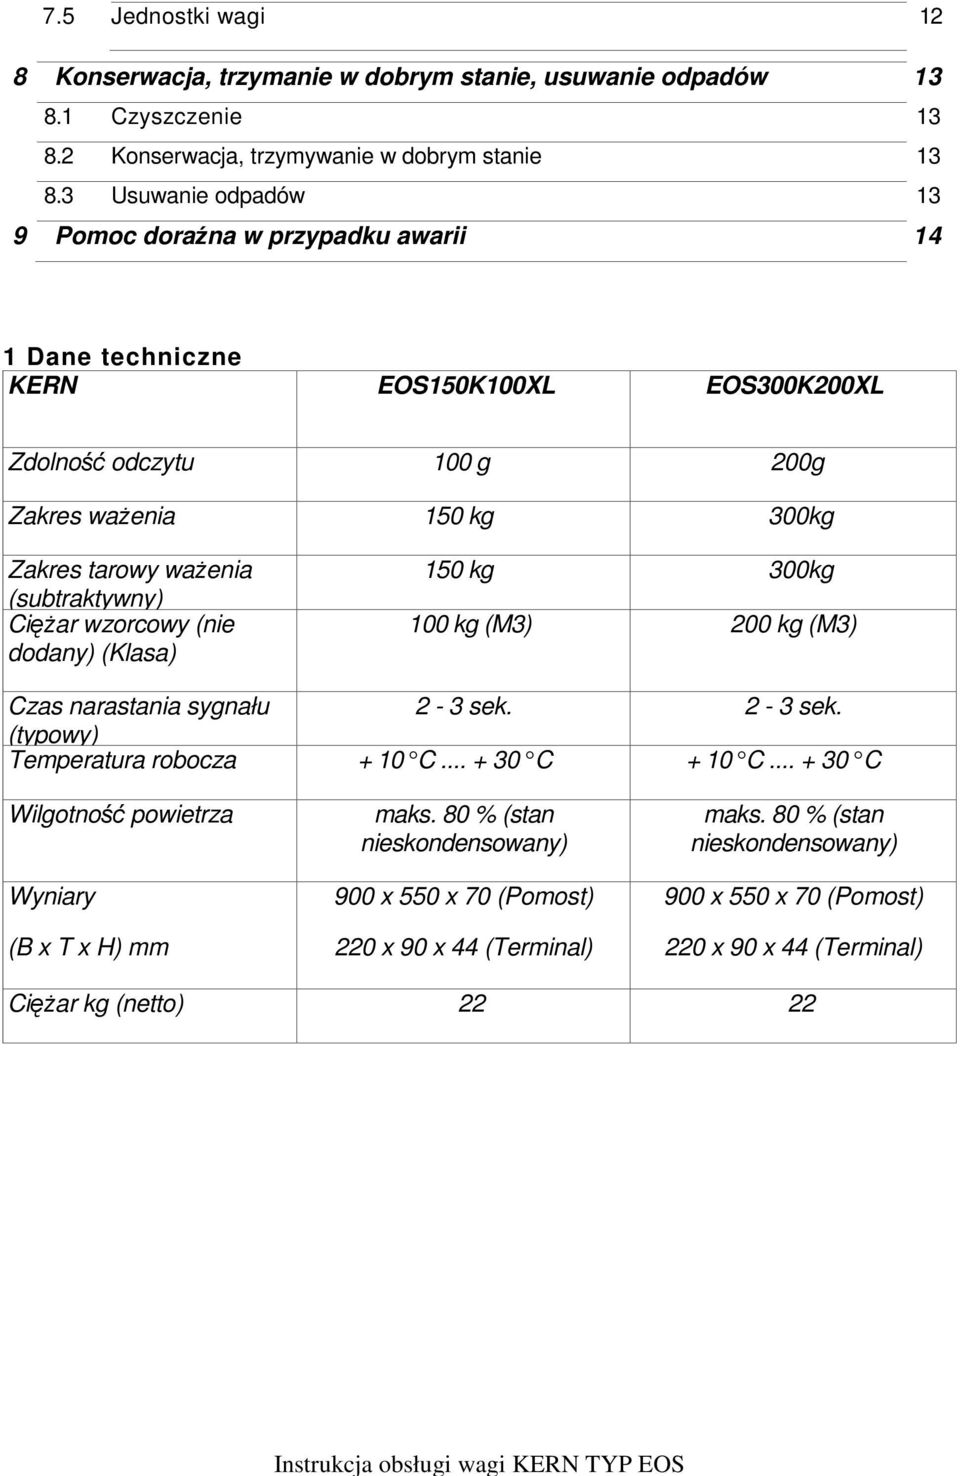 (subtraktywny) Ciężar wzorcowy (nie dodany) (Klasa) 150 kg 300kg 100 kg (M3) 200 kg (M3) Czas narastania sygnału 2-3 sek. 2-3 sek. (typowy) Temperatura robocza + 10 C... + 30 C + 10 C.